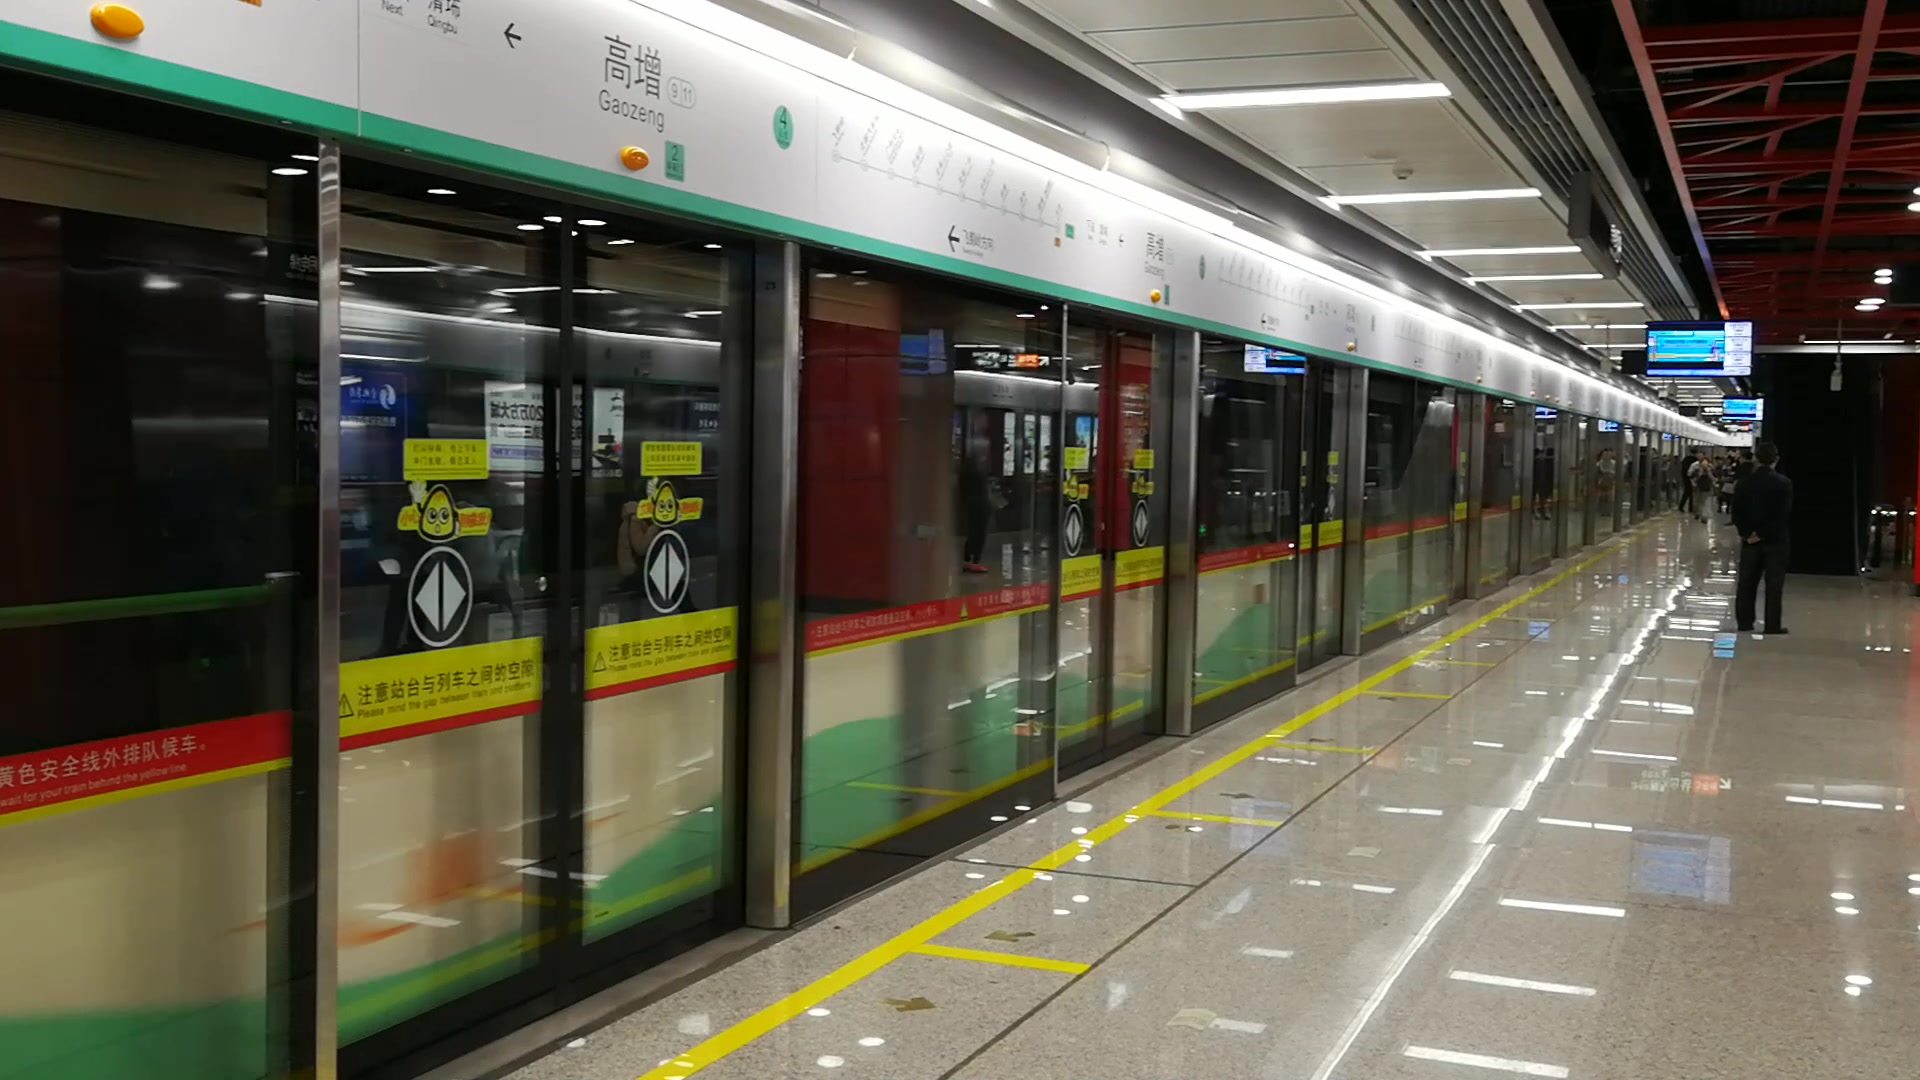 广东又将迎来新地铁,投资约211亿,长约25公里,预计2023年运营